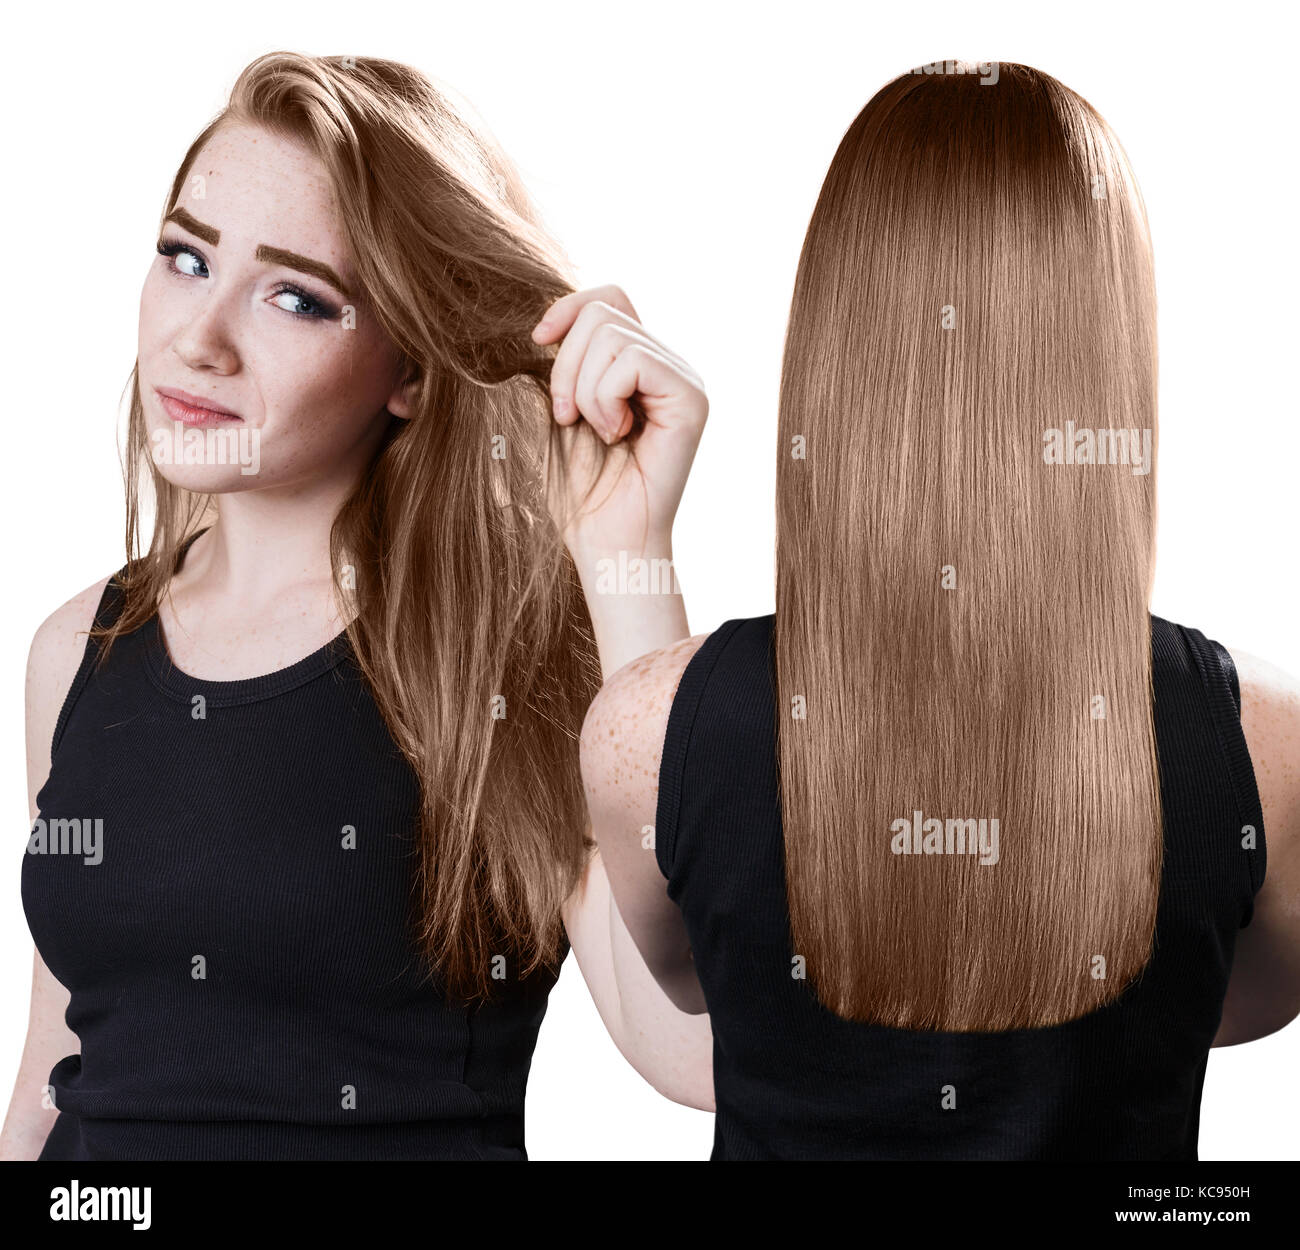 El cabello de la mujer antes y después del tratamiento. Foto de stock